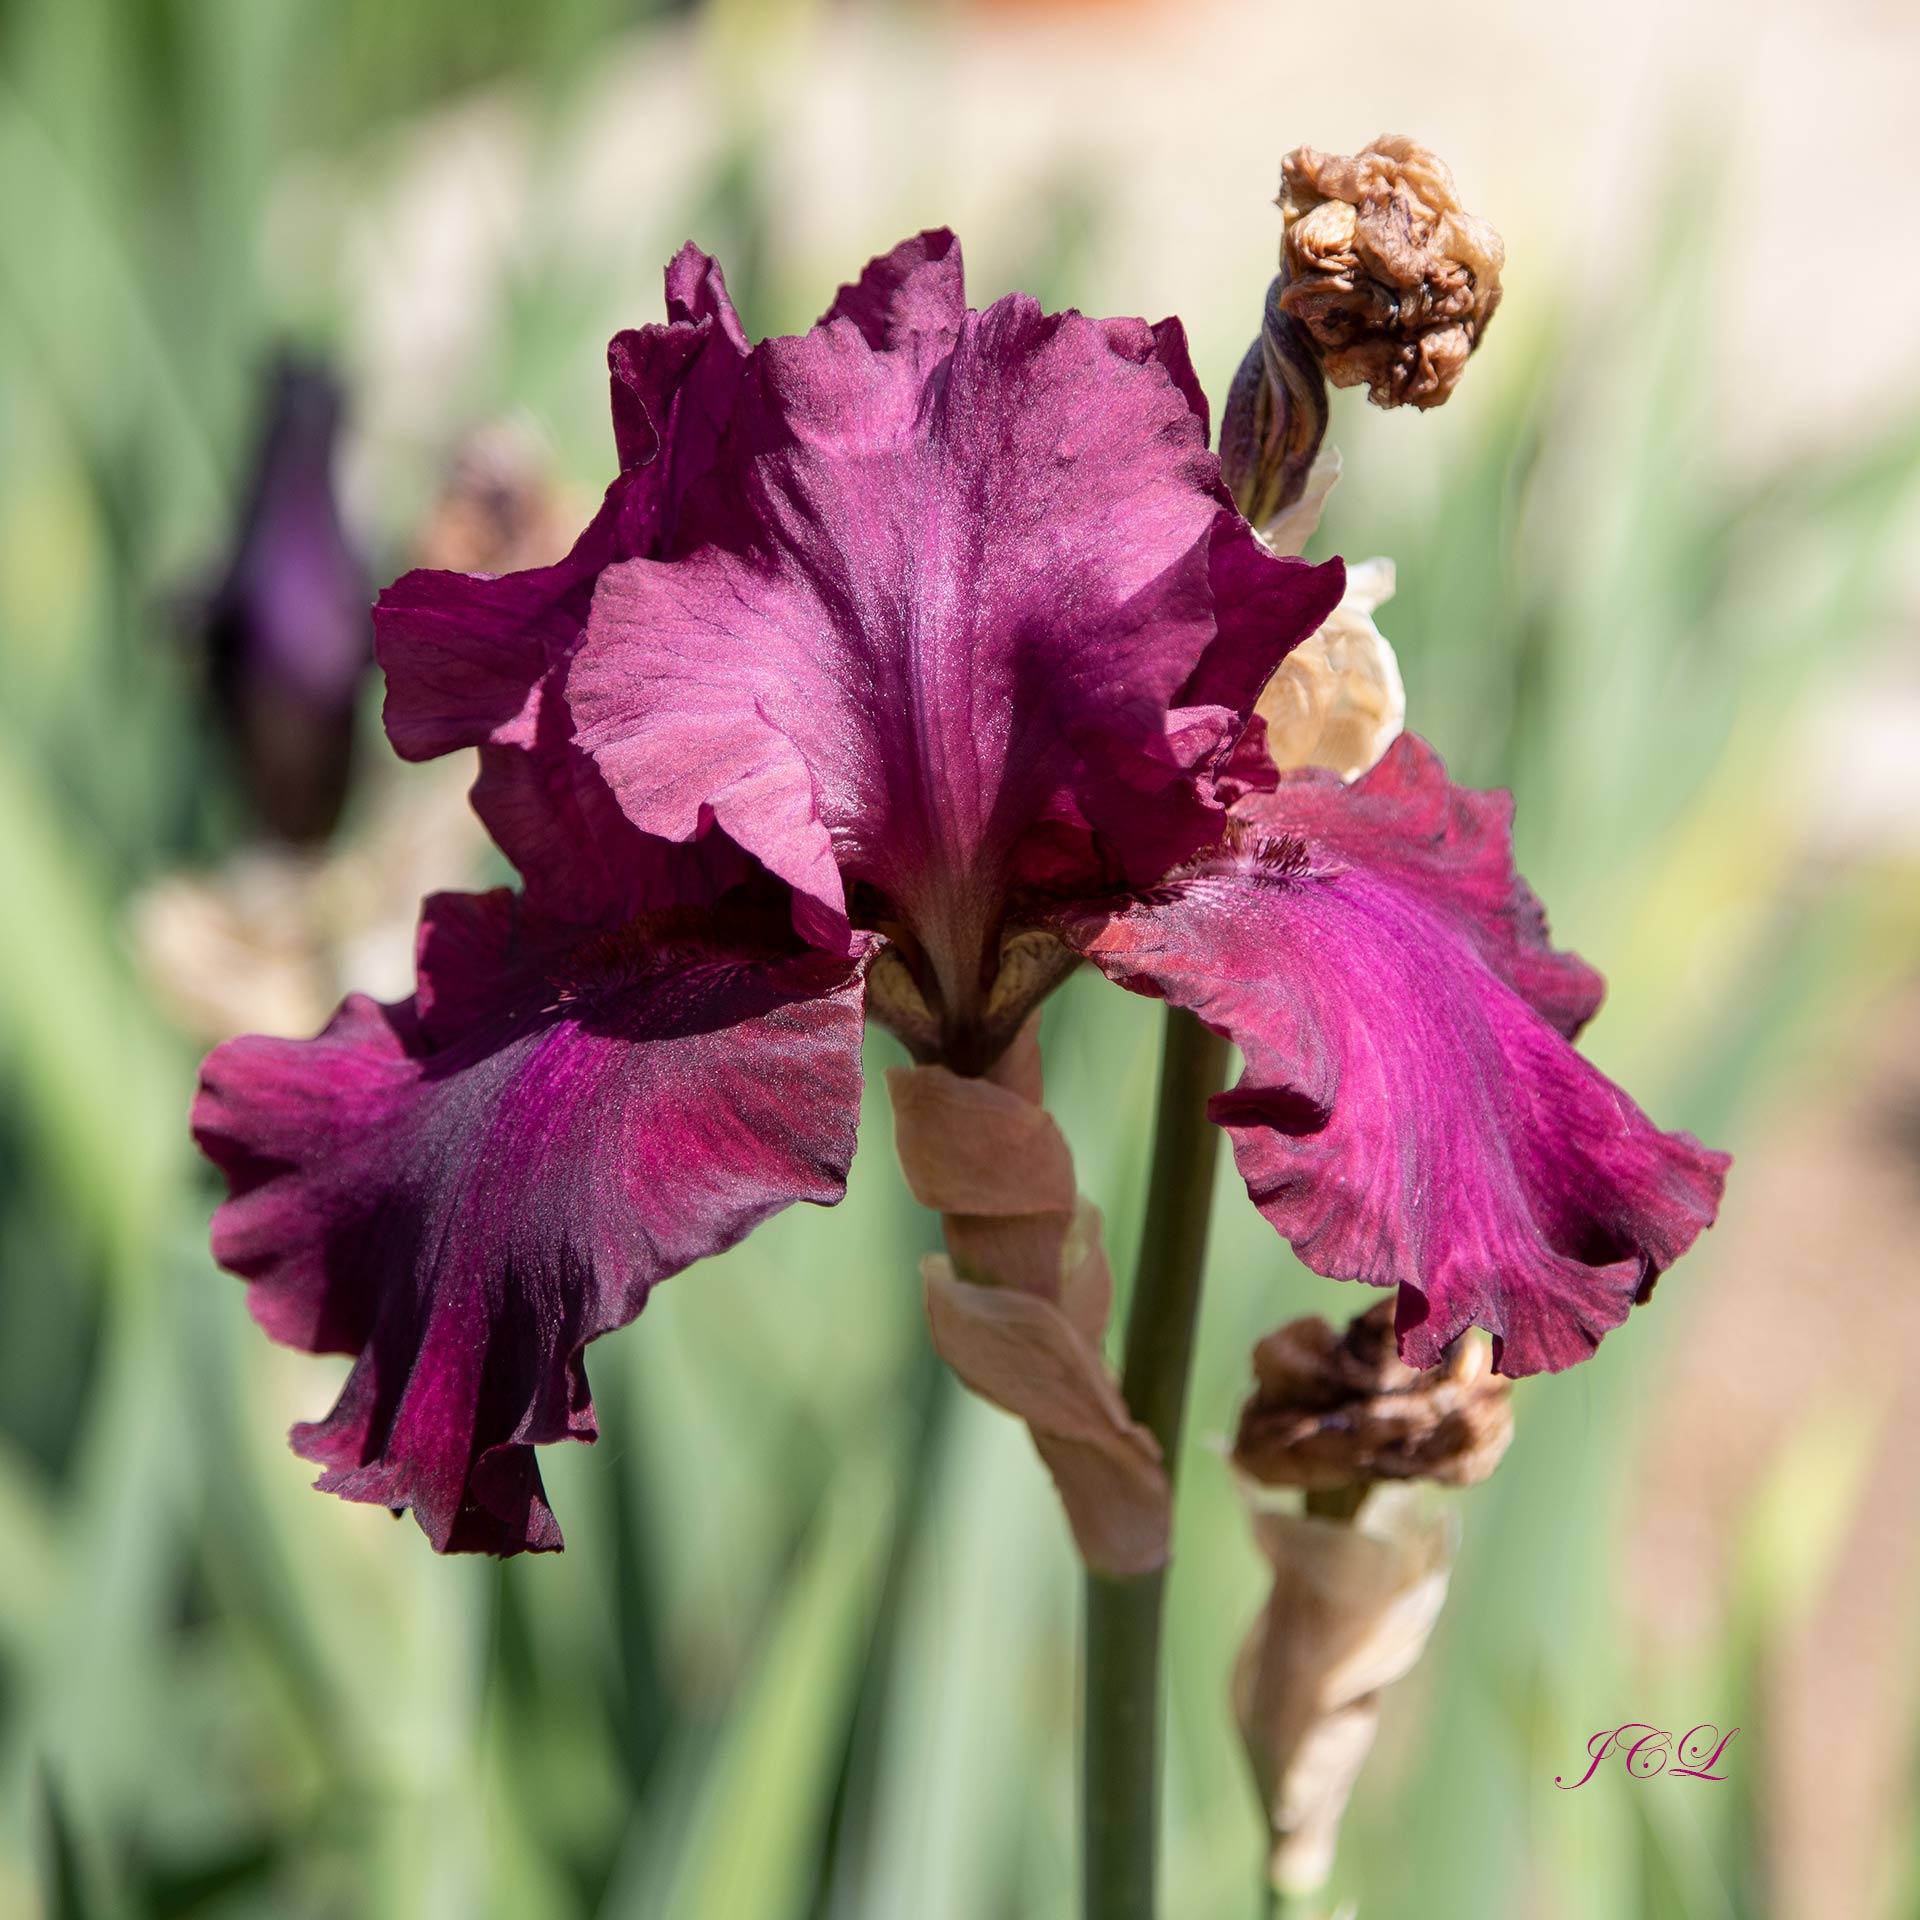 Magnifique iris mauve du Parc de Bagatelle.